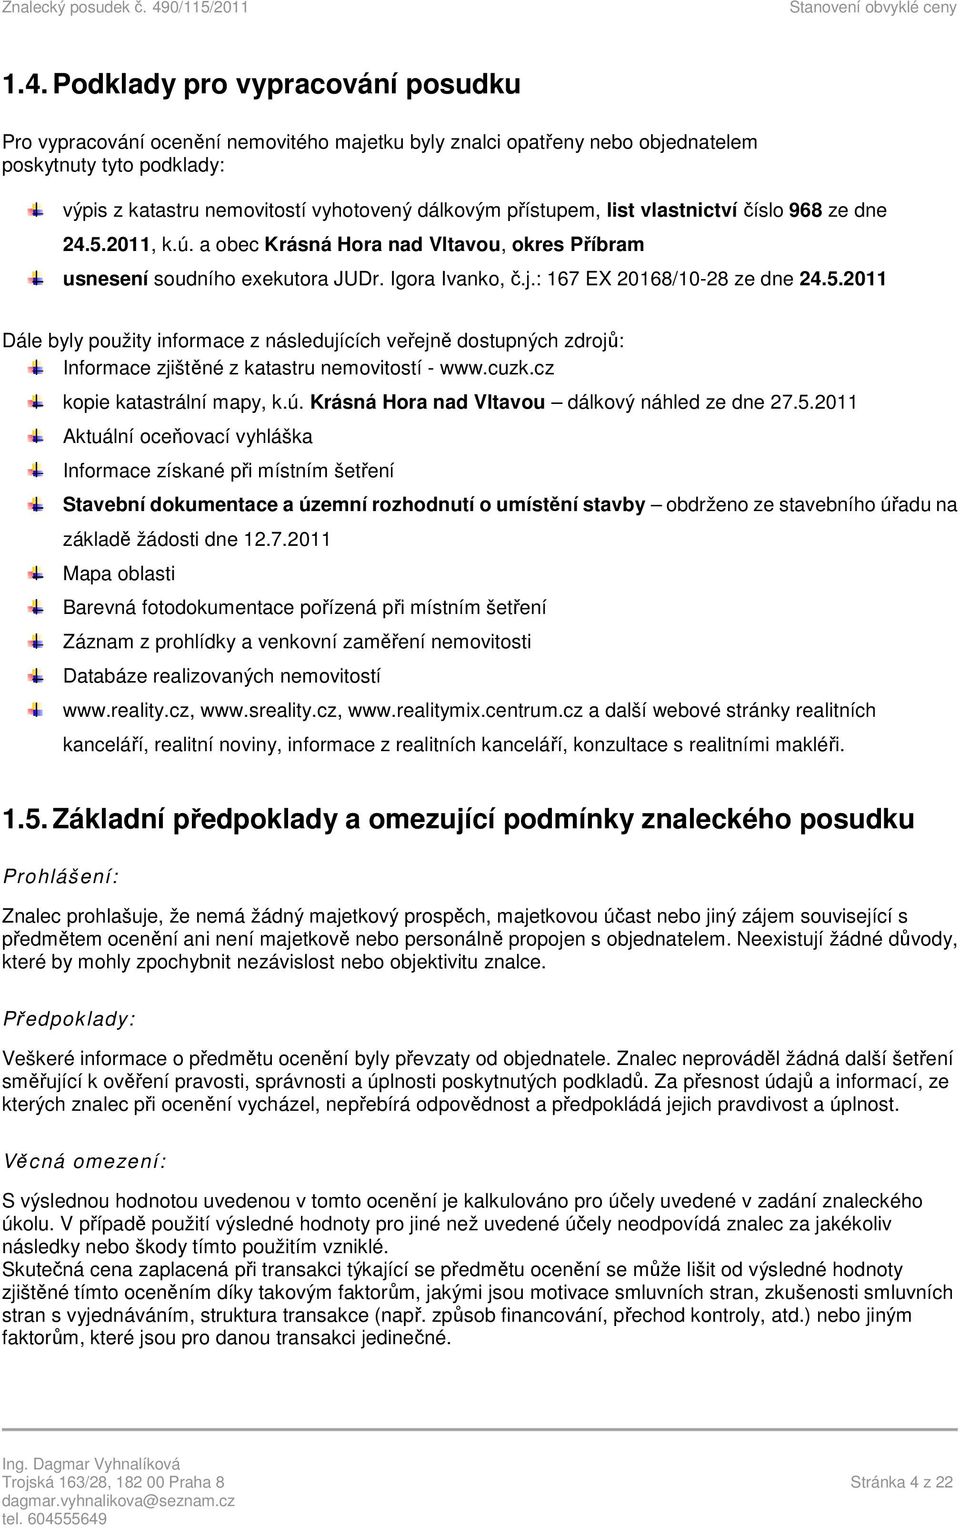 cuzk.cz kopie katastrální mapy, k.ú. Krásná Hora nad Vltavou dálkový náhled ze dne 27.5.